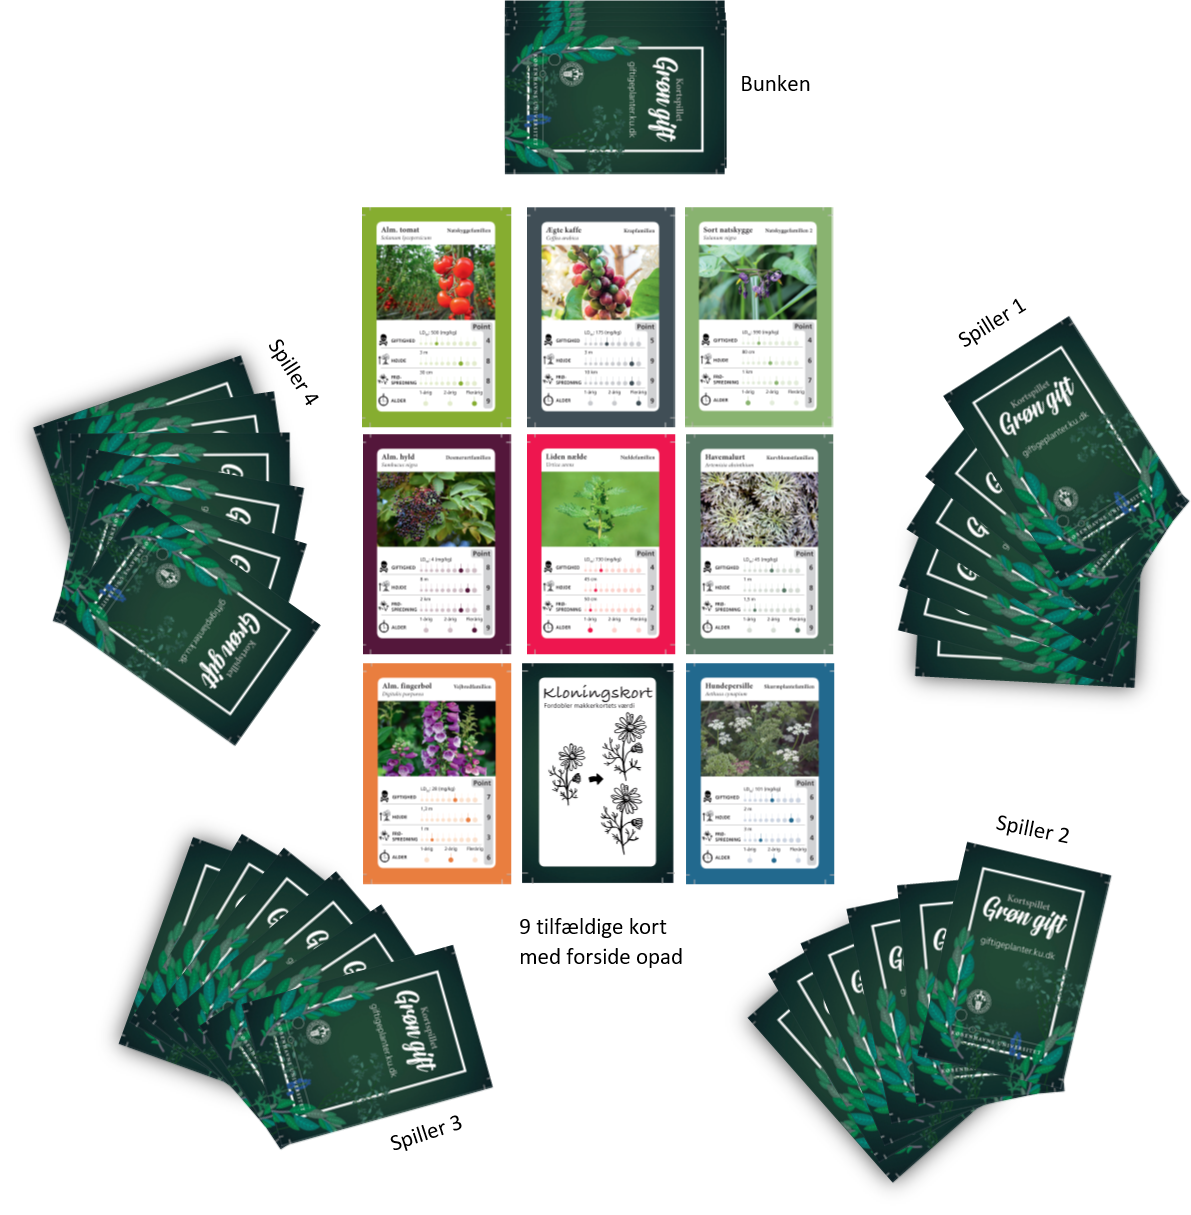 Et eksempel på hvordan kortspillet ser ud i brug med fire spillere, der hver har seks kort. På bordet er desuden en bunke og ni tilfældige kort, der vender med billedsiden op.